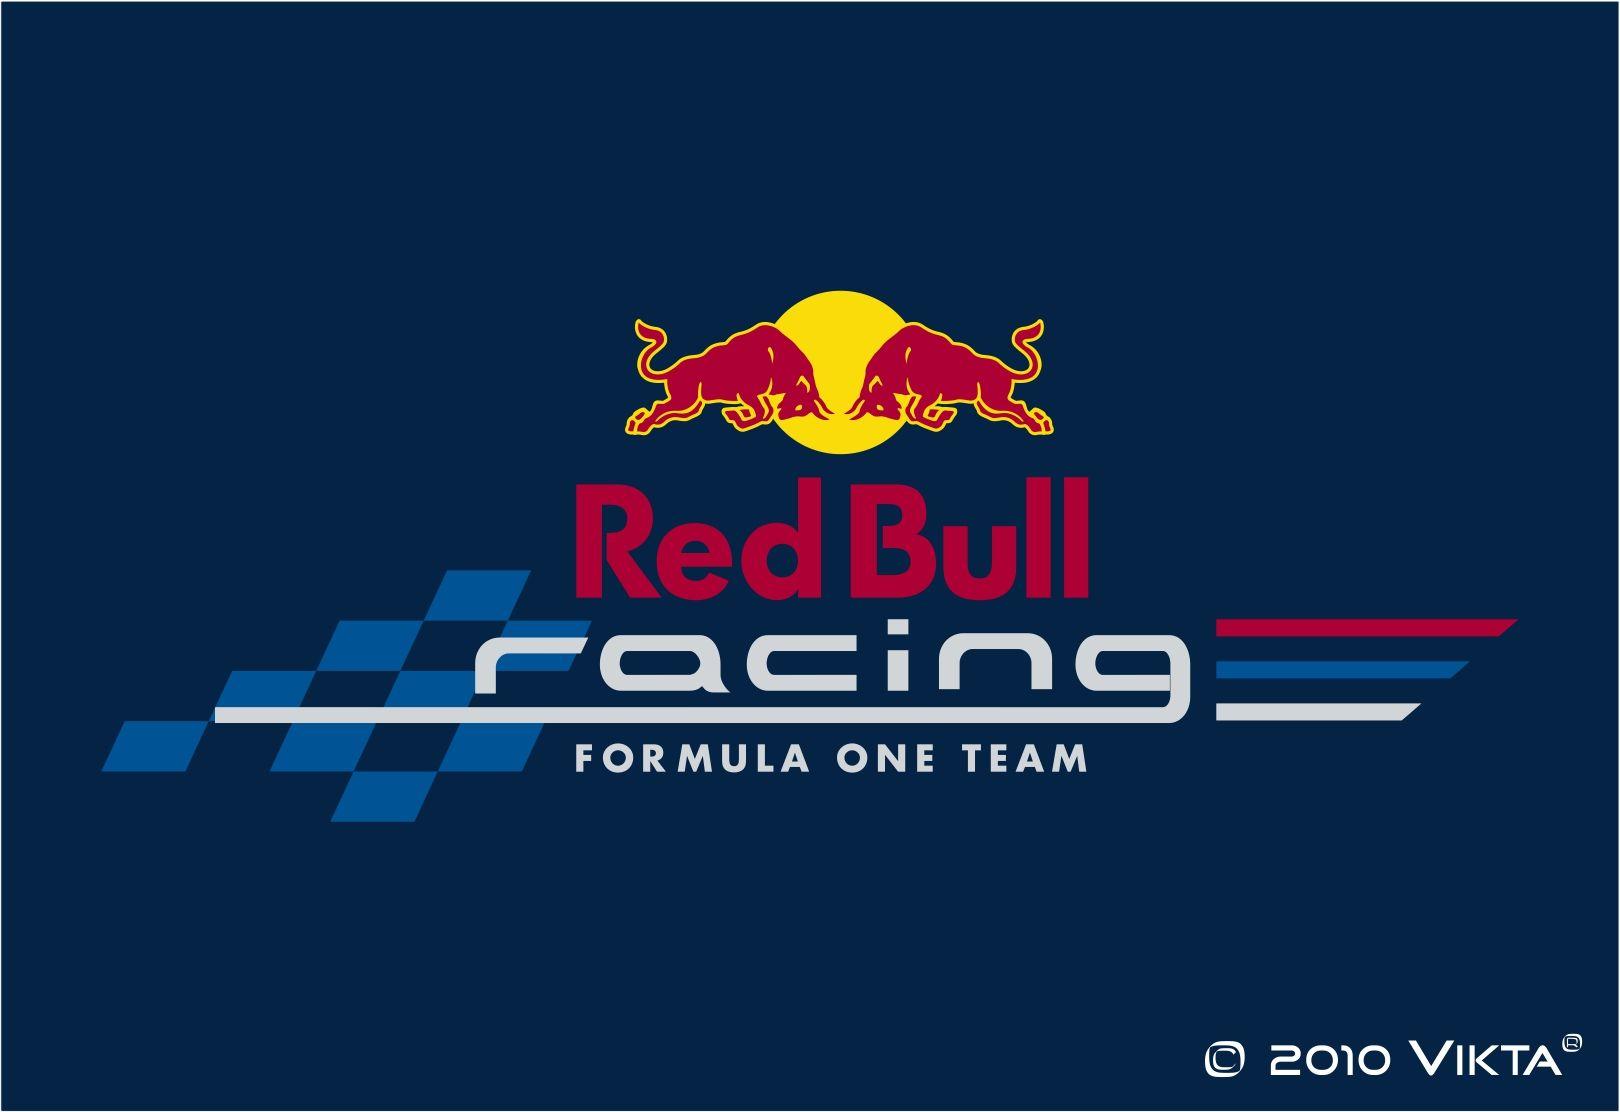 Red bull racing logo wallpapers